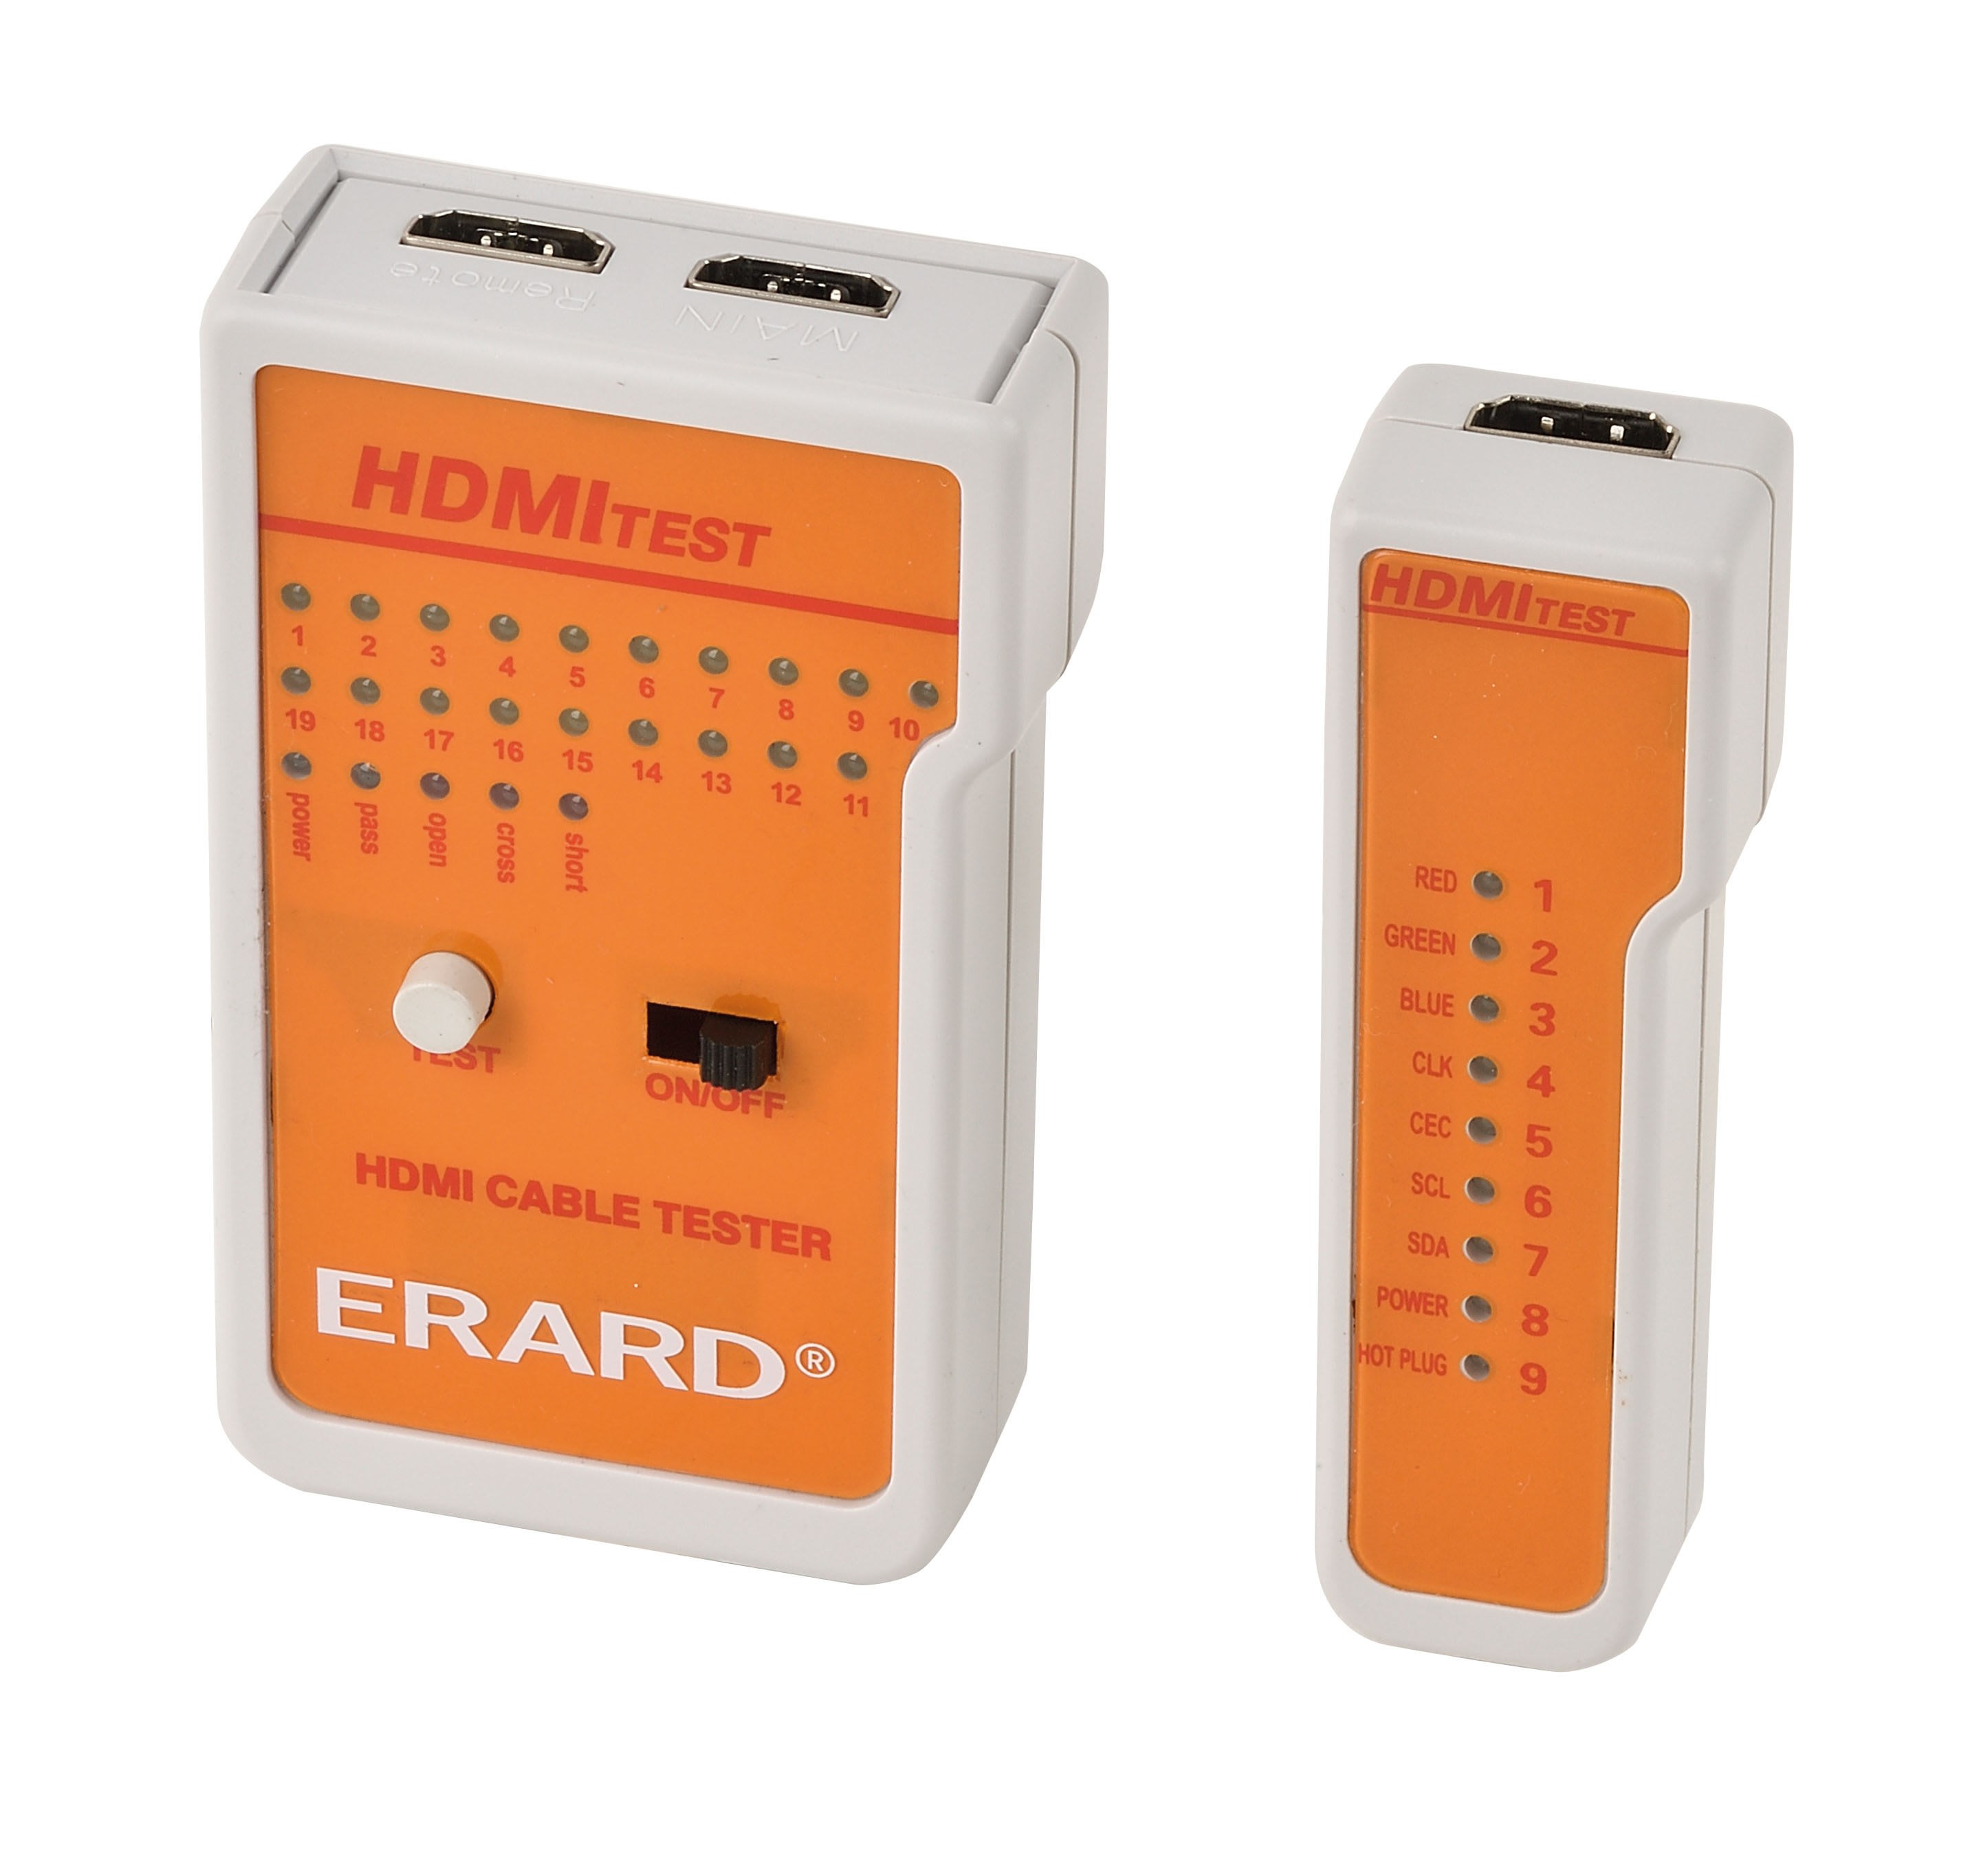 Erard - Testeur pour cordons HDMI - testeur de continuité - affichage LED